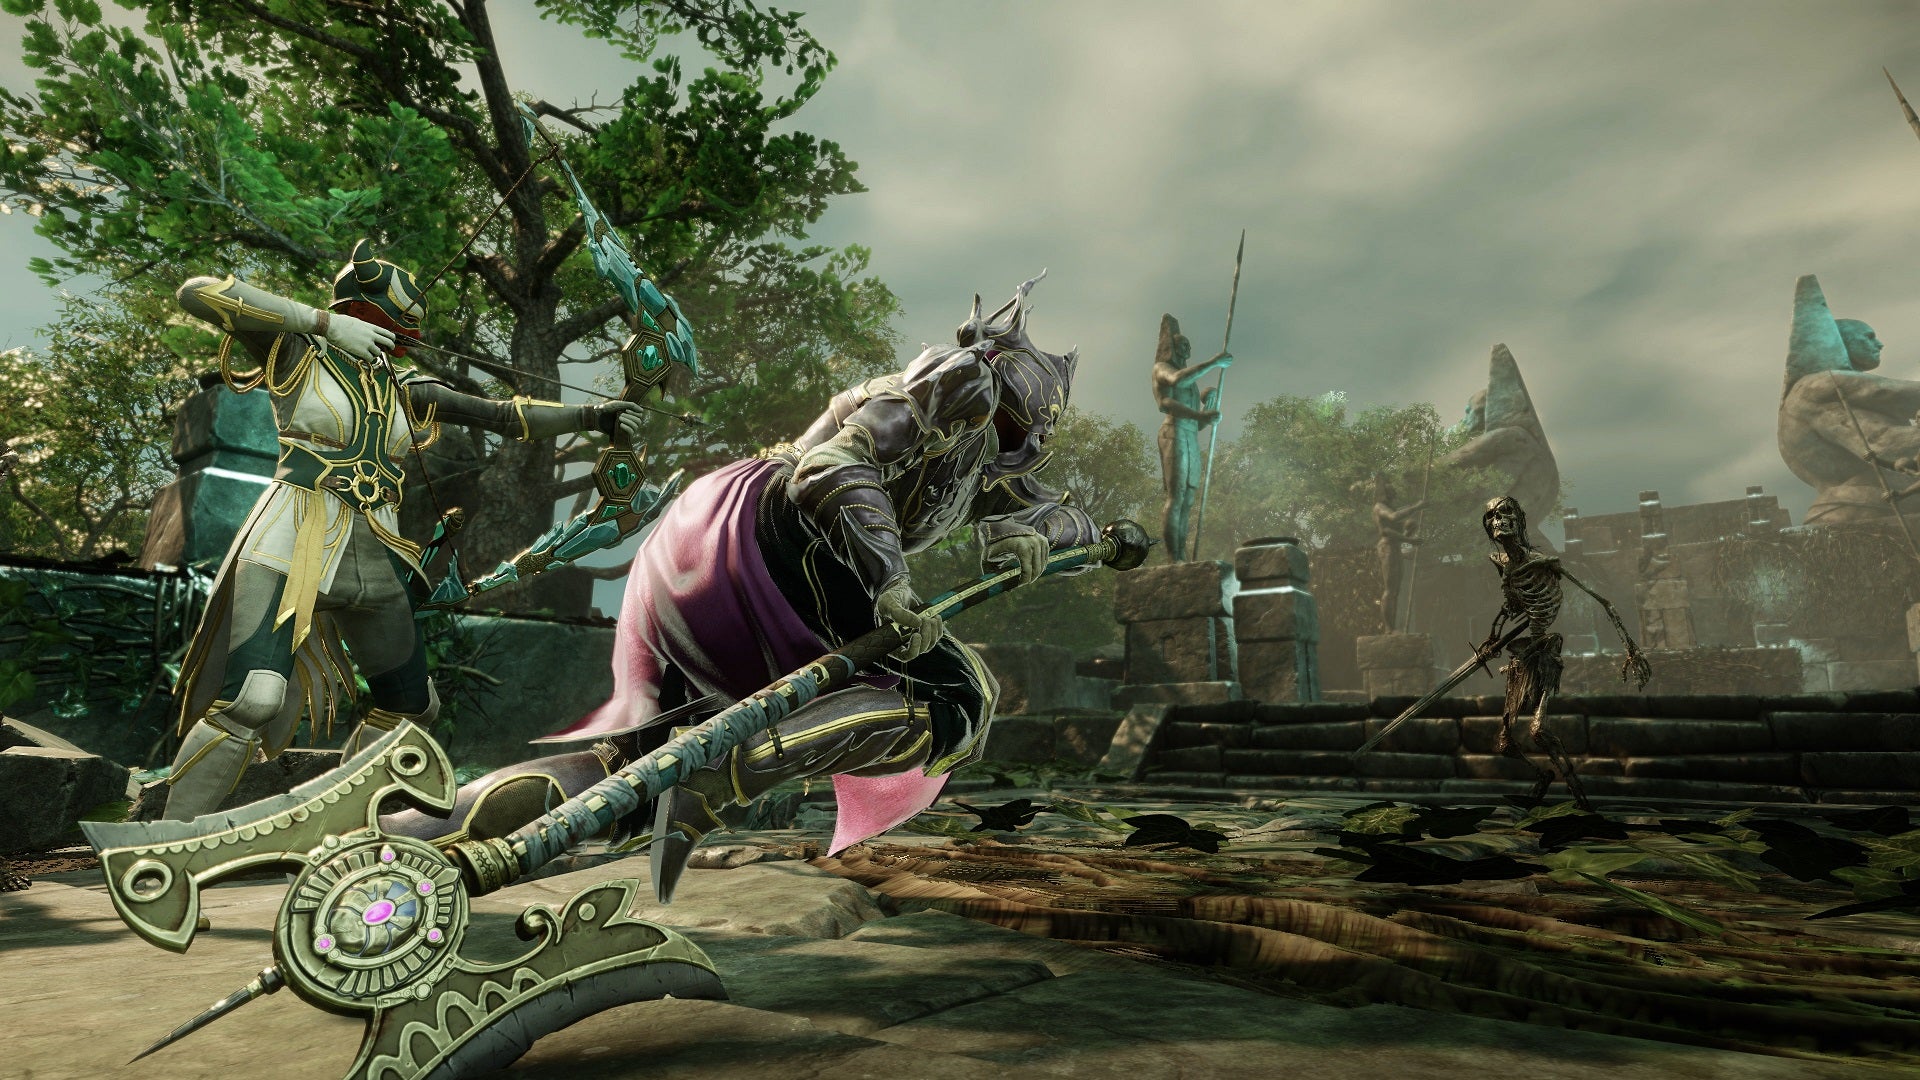 Dois personagens do Novo Mundo com armaduras pesadas lutam contra um inimigo esqueleto.  Um carrega um arco e flecha, o outro tem um machado de batalha.